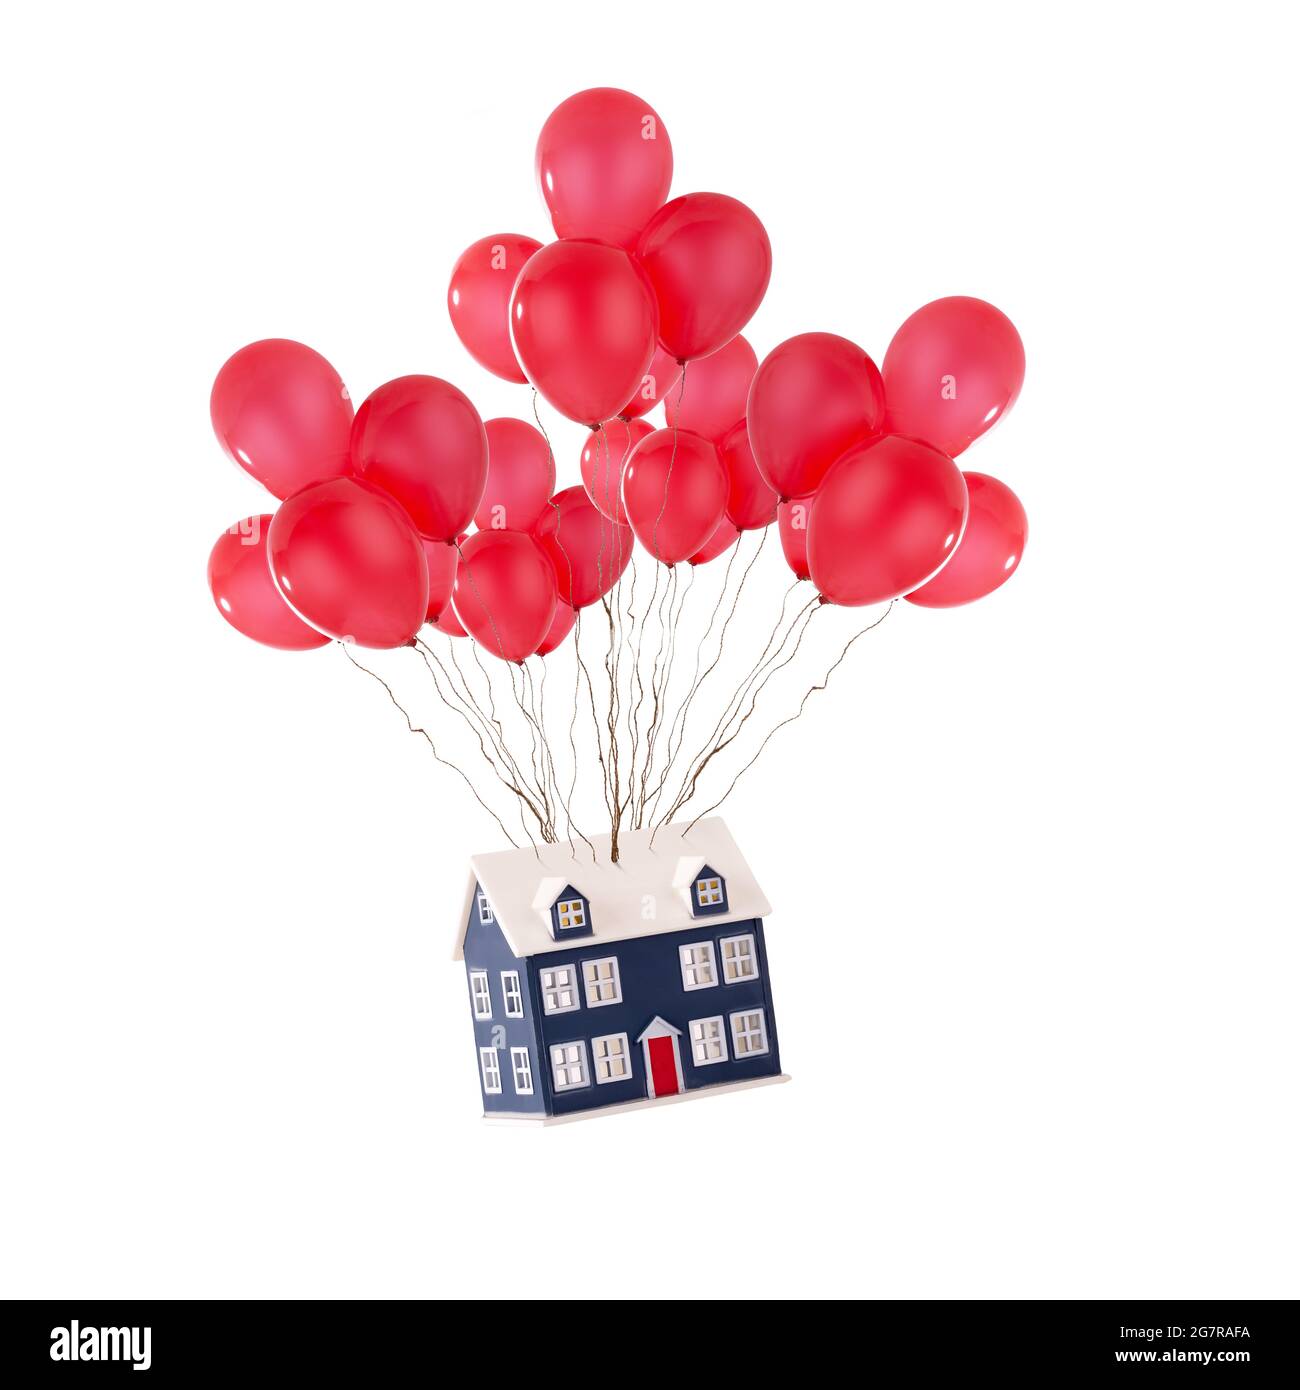 Casa giocattolo galleggiante con palloncini rossi isolati su uno sfondo bianco. Casa in movimento e nuovo concetto di casa per gli agenti immobiliari Foto Stock